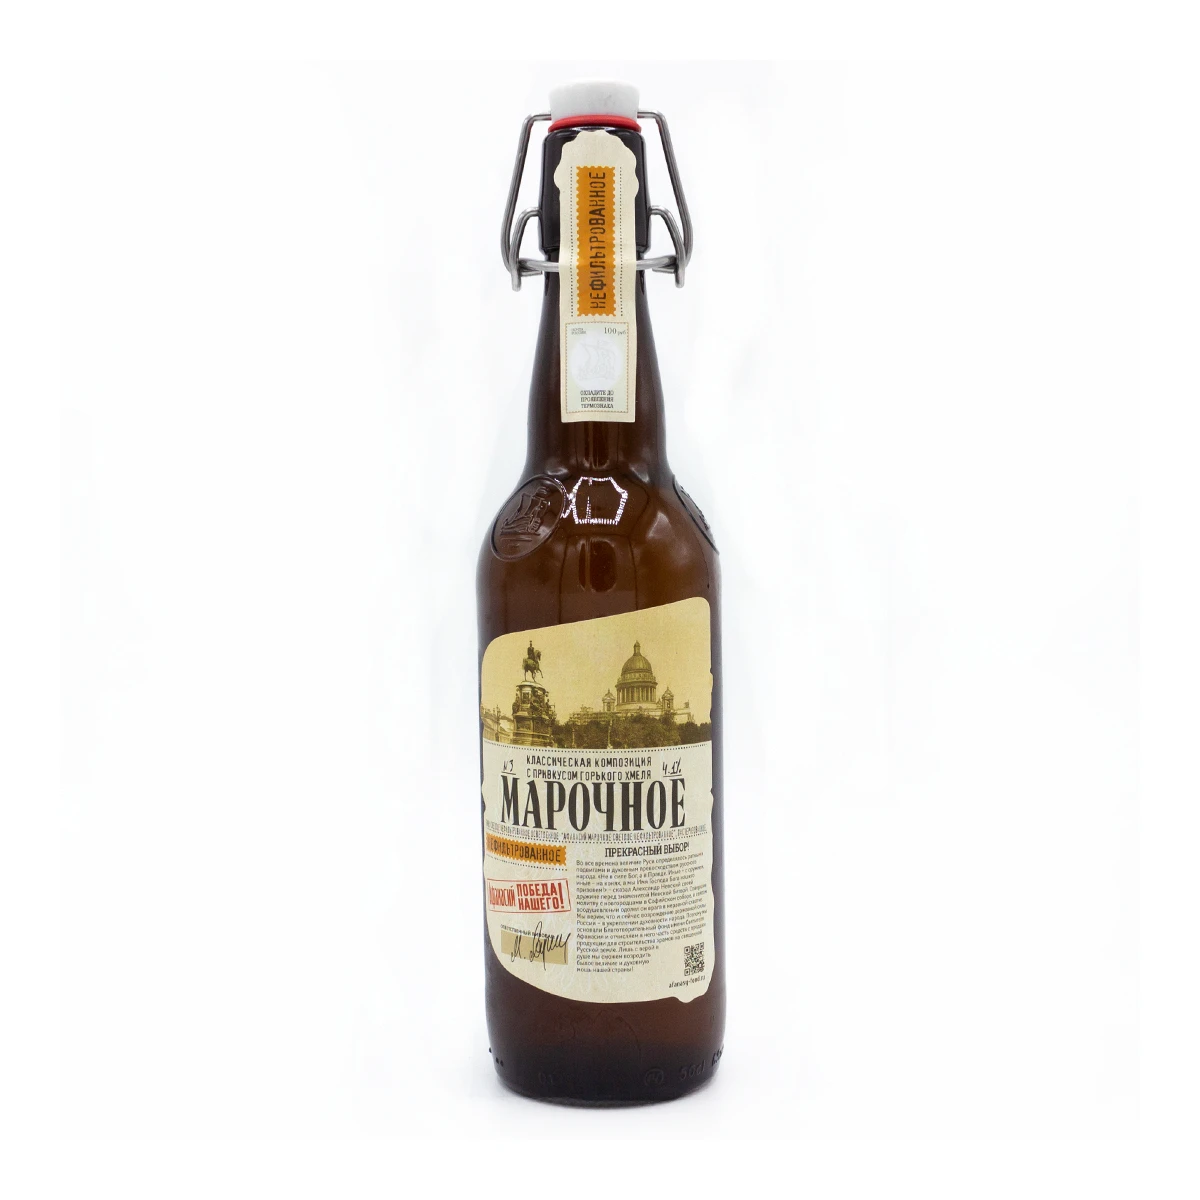 Lager Light Beer glass bottle 500ml